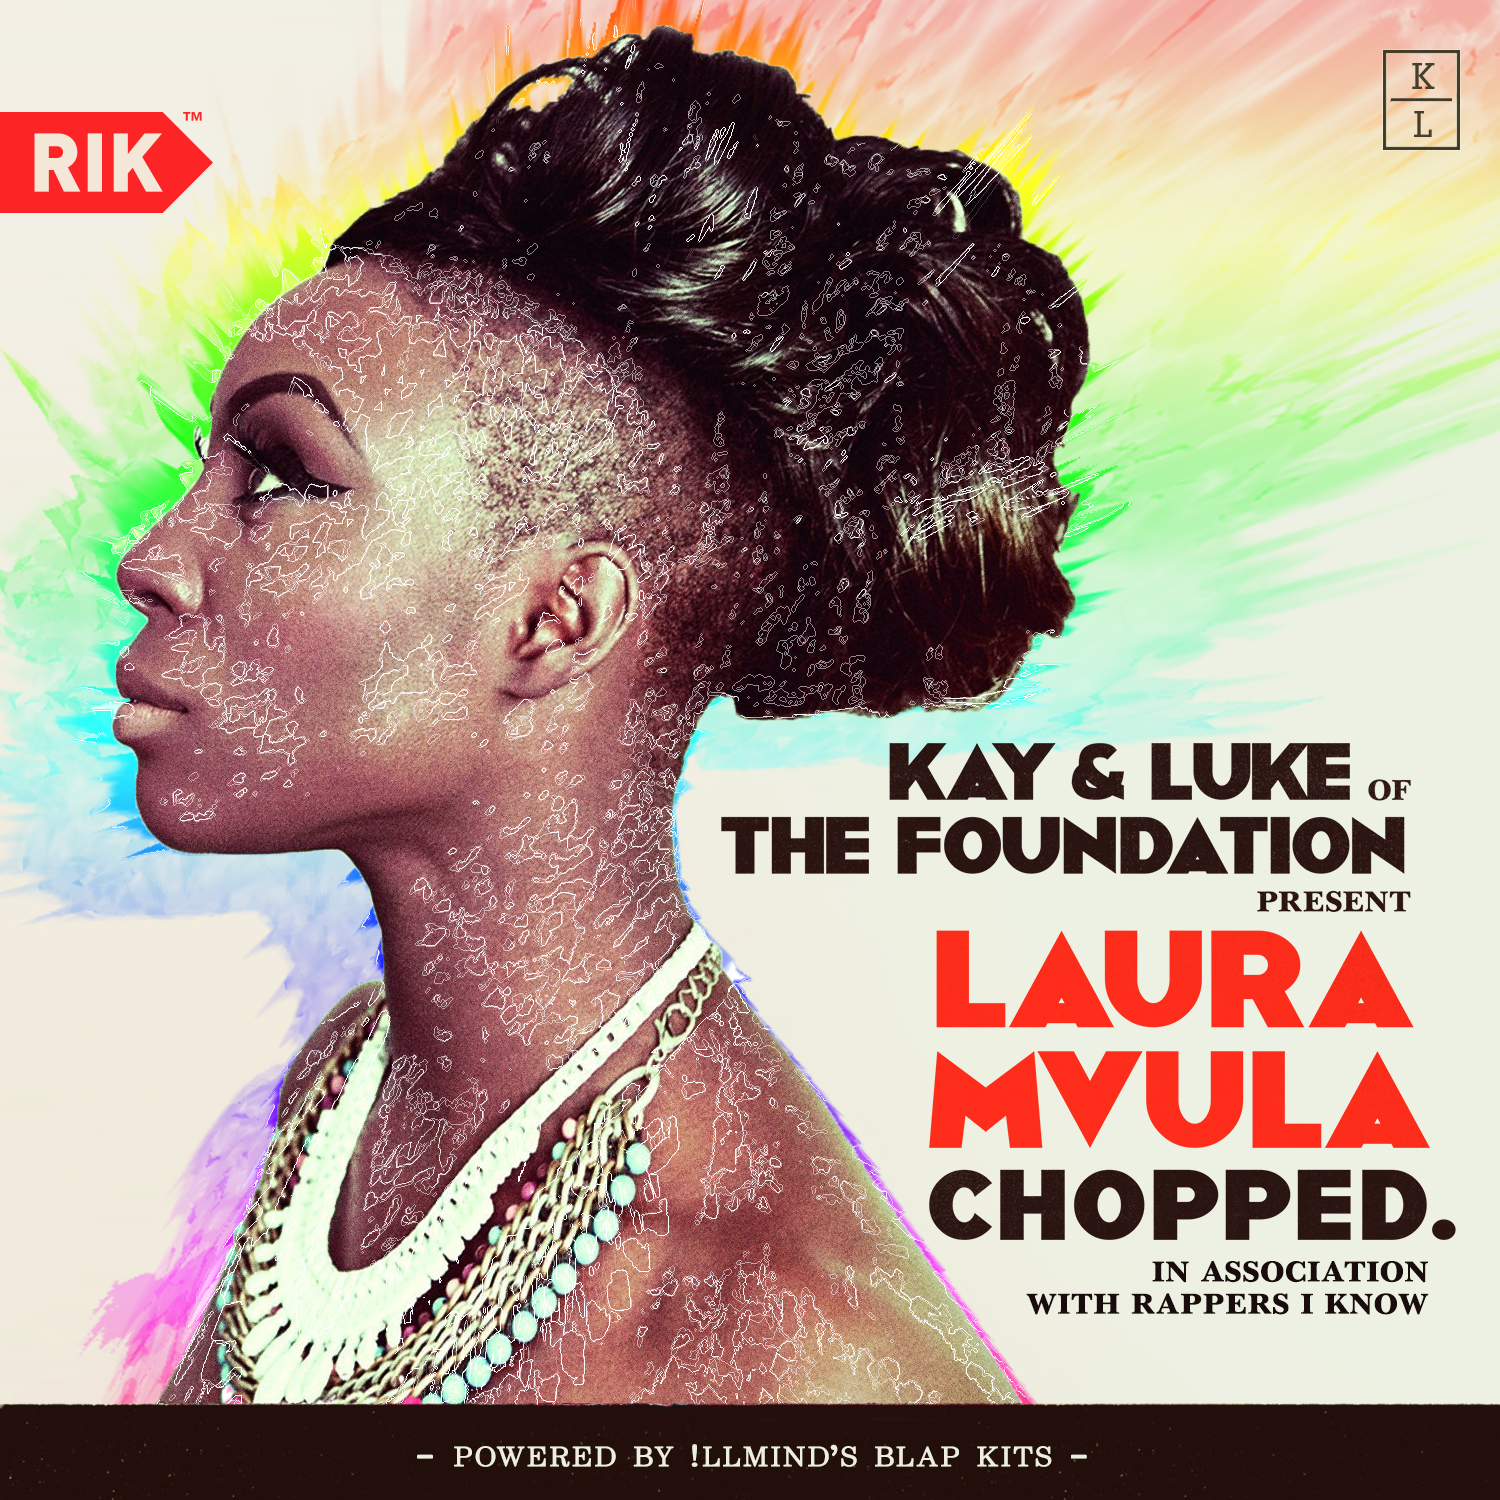 Kay & Luke (of The Foundation) — Laura Mvula Chopped.